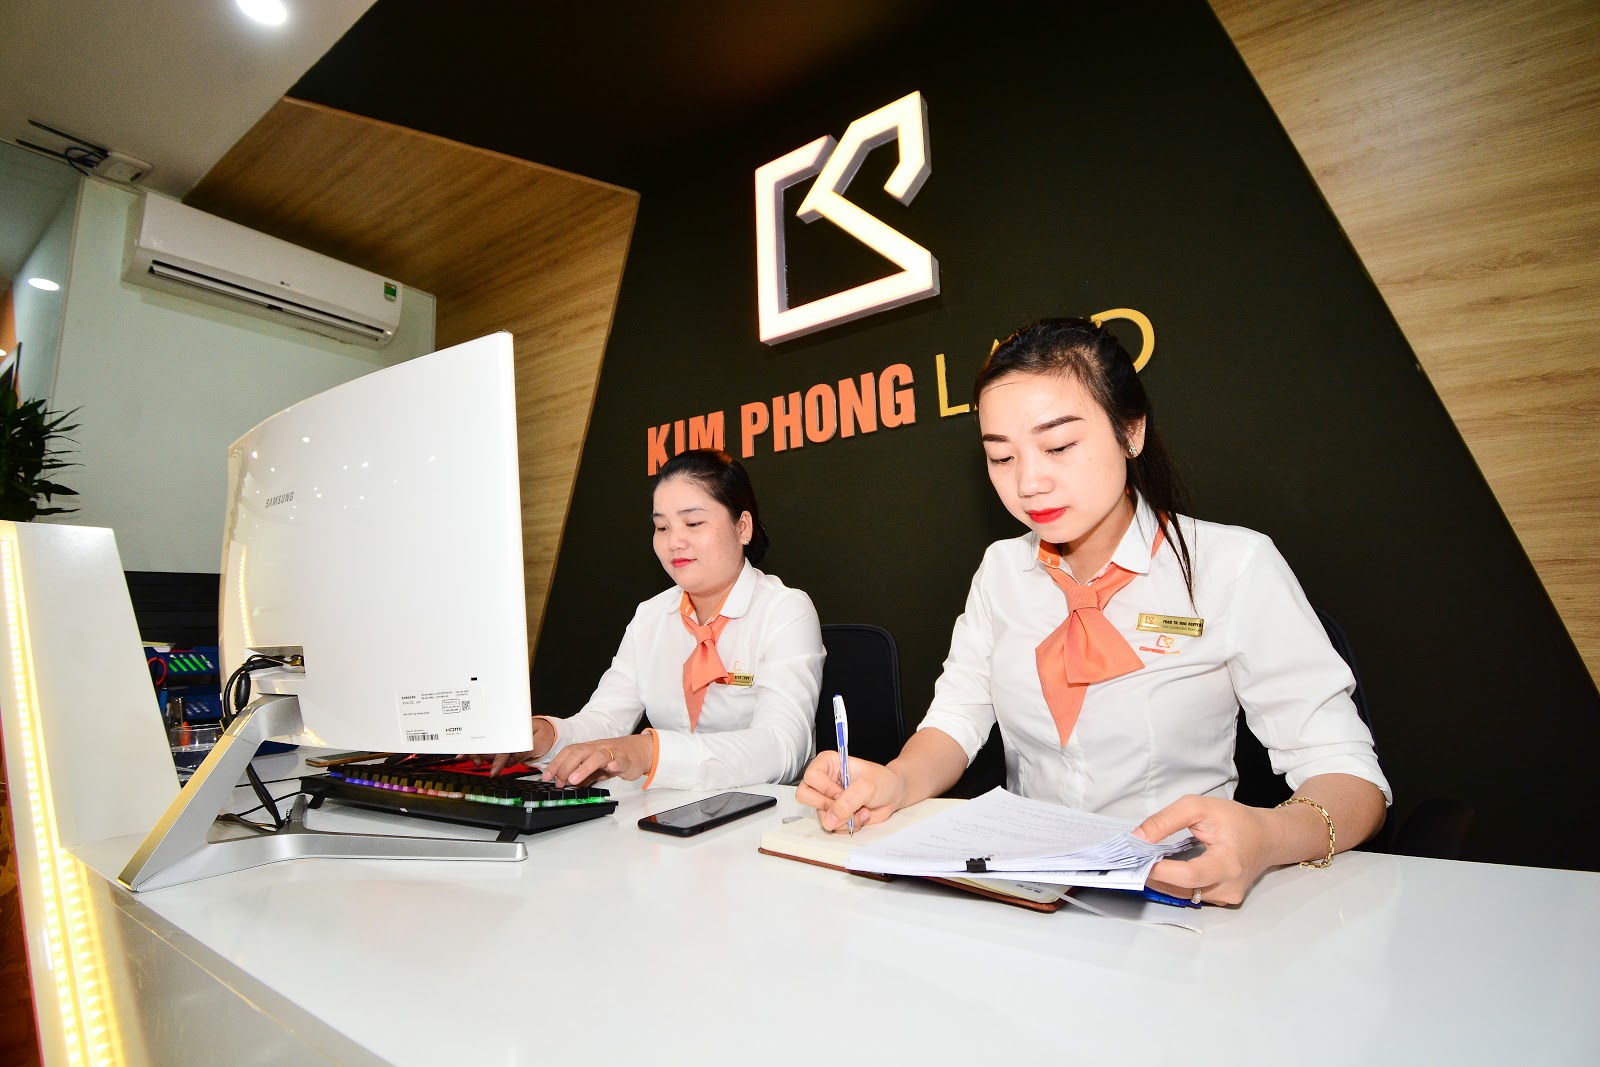 Dịch vụ chụp ảnh quảng cáo, nội ngoại thất tại Đà Nẵng, Quảng Nam